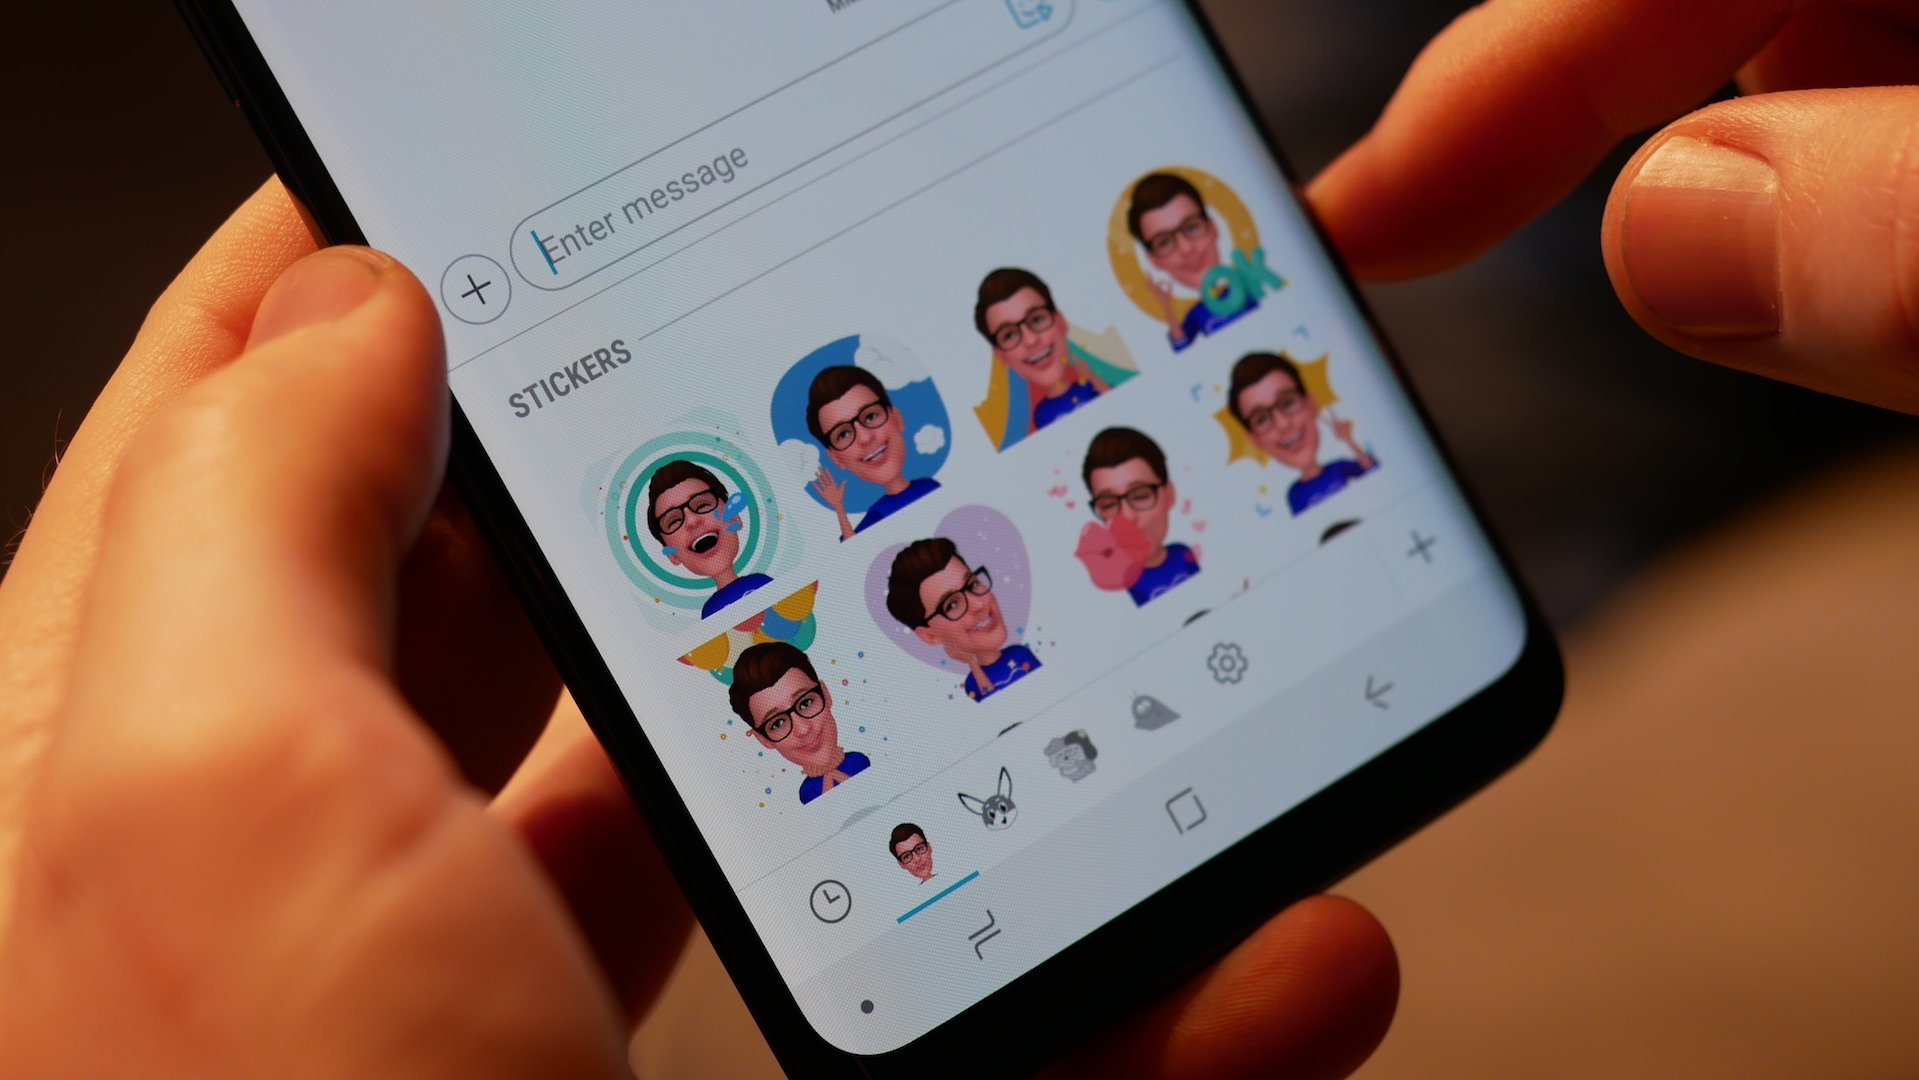 huiswerk seinpaal Becks Samsung adds 18 new AR Emoji stickers - SamMobile